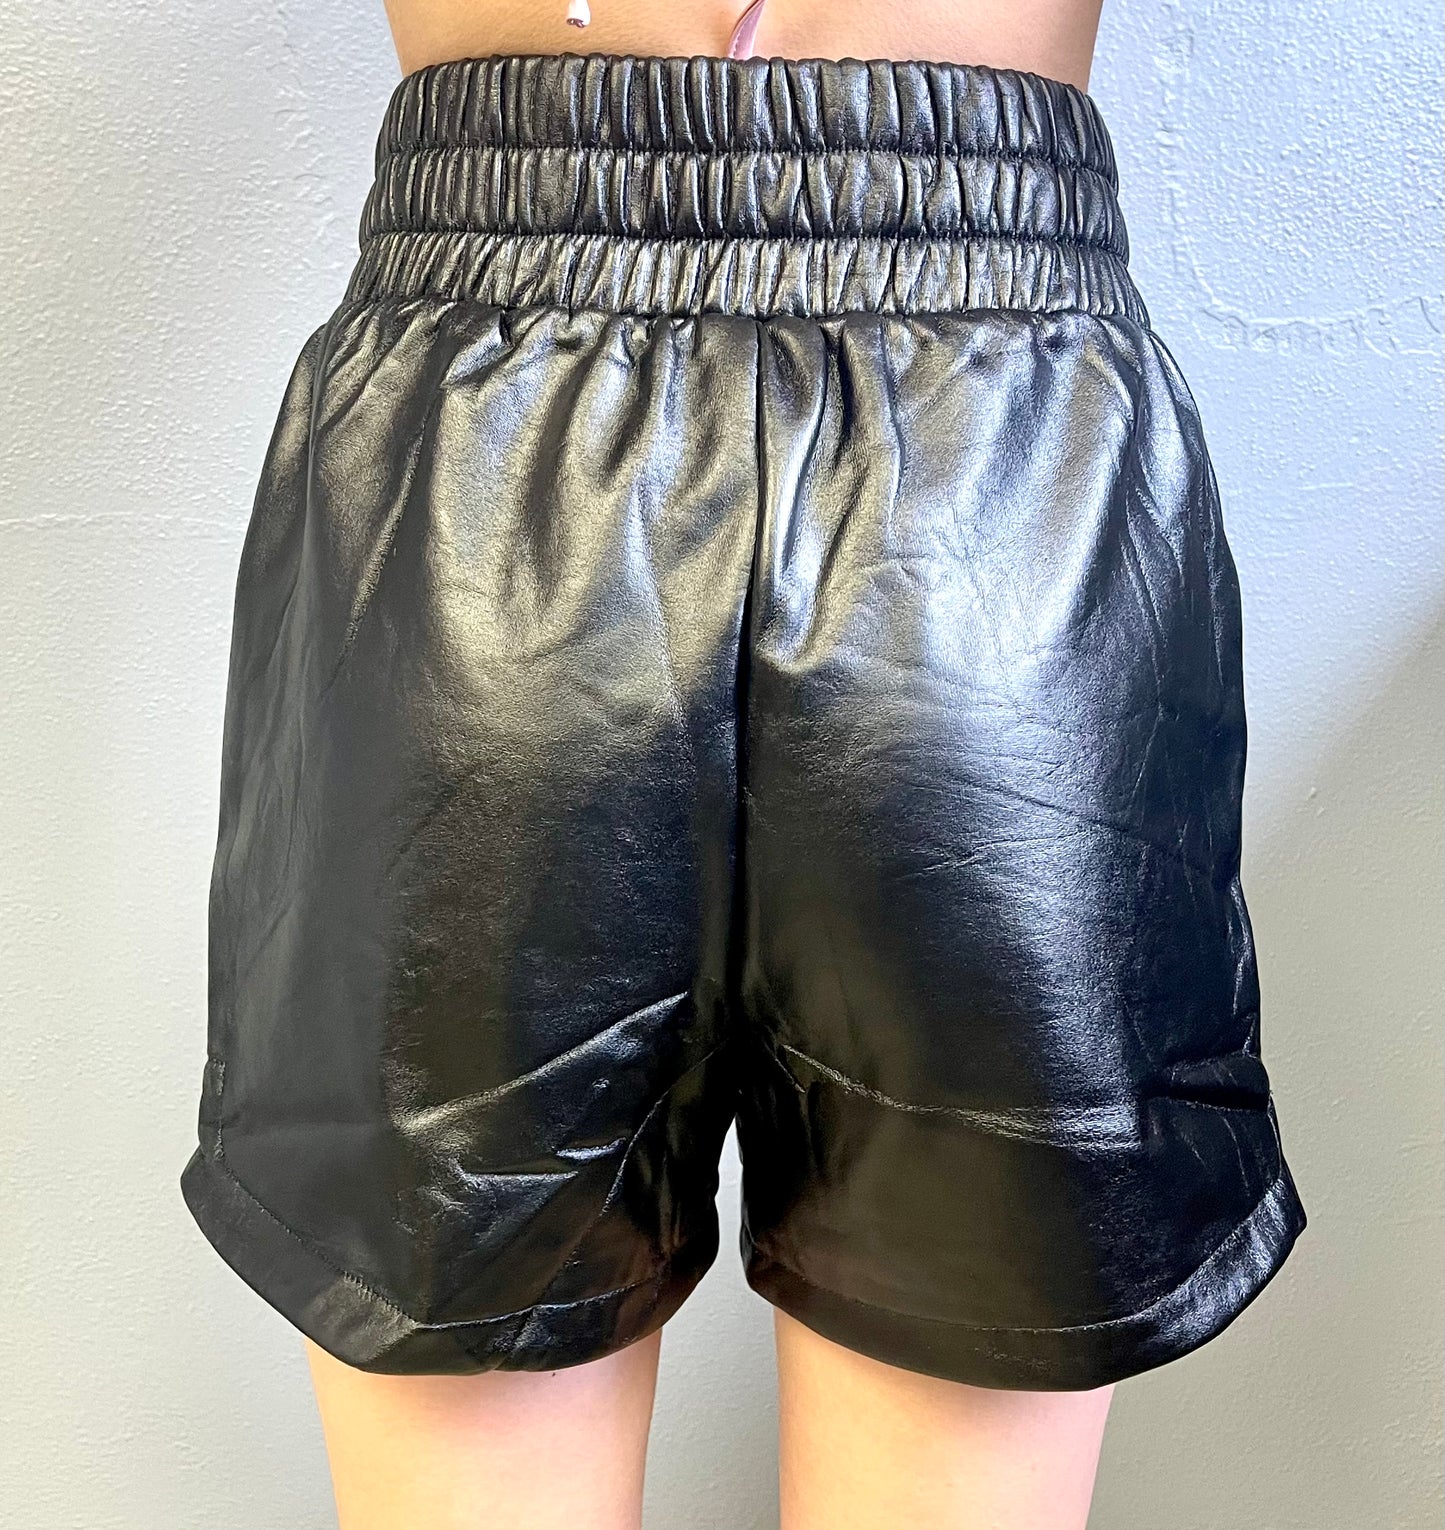 CES FEMME- Faux Leather Shorts